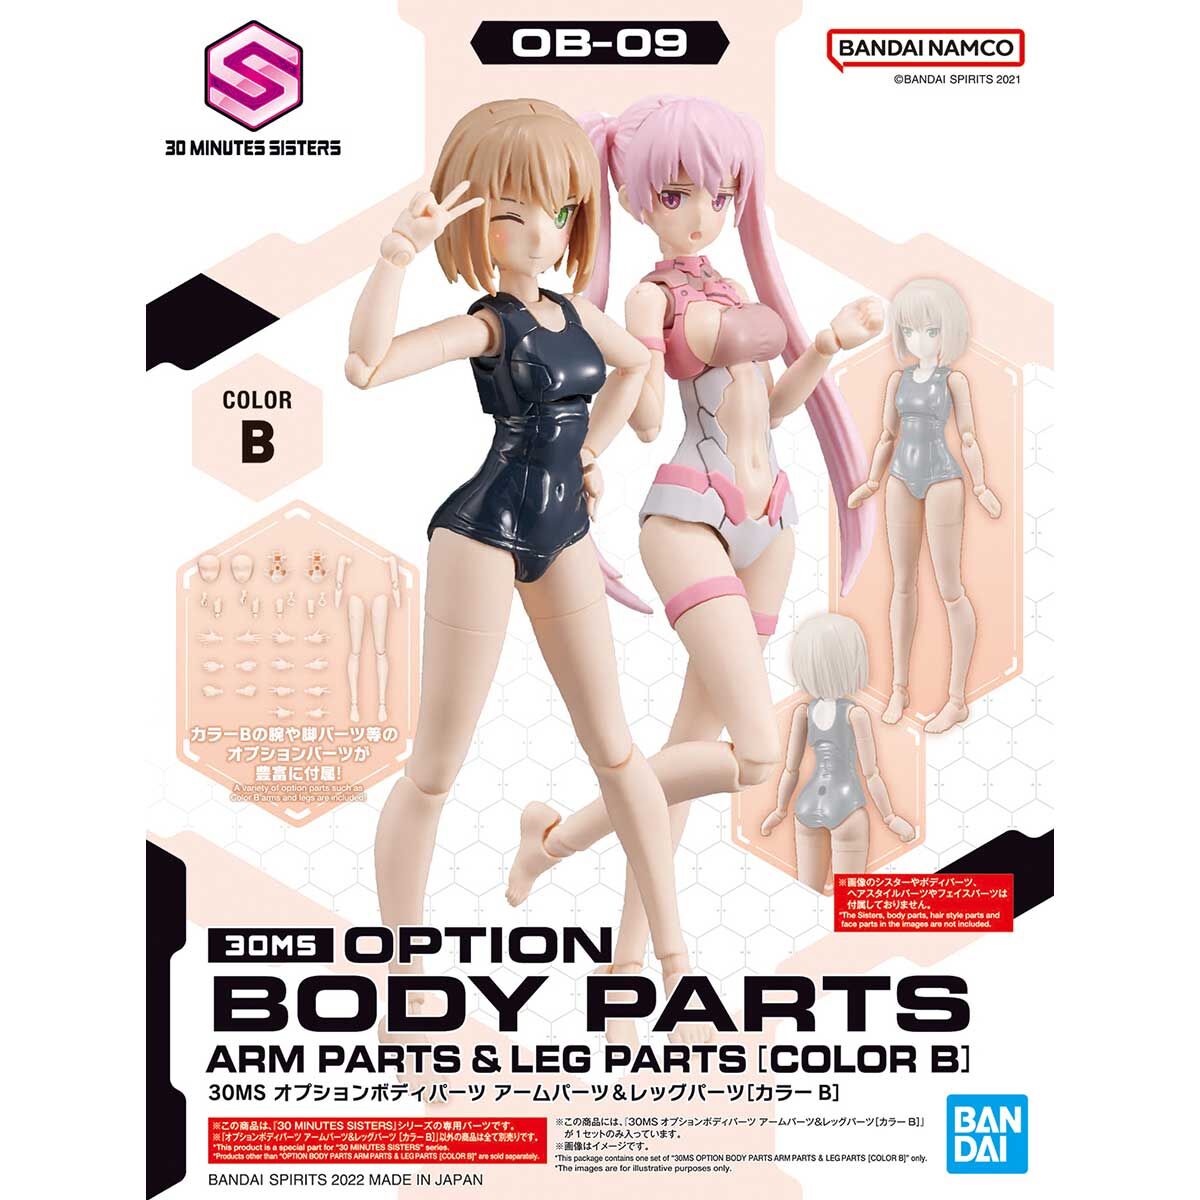 30MS Option Body Parts Arm & Leg (Color B)